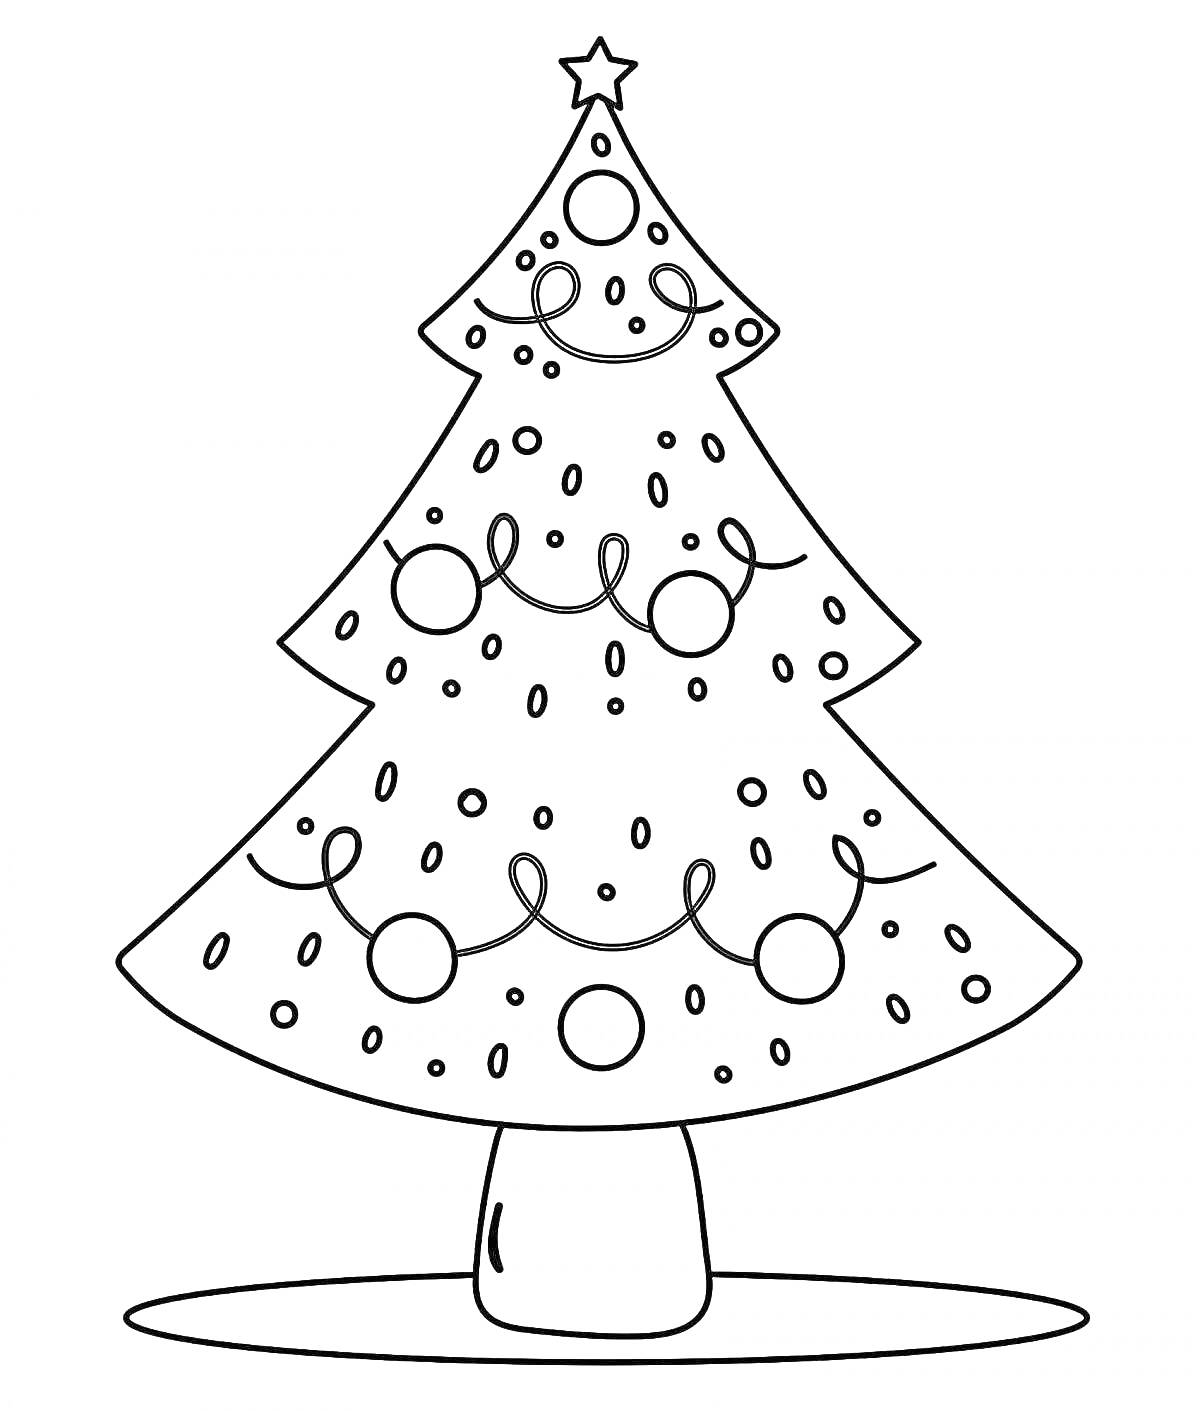 Раскраска Елочка с шарами, гирляндами, звездой на макушке и снежинками